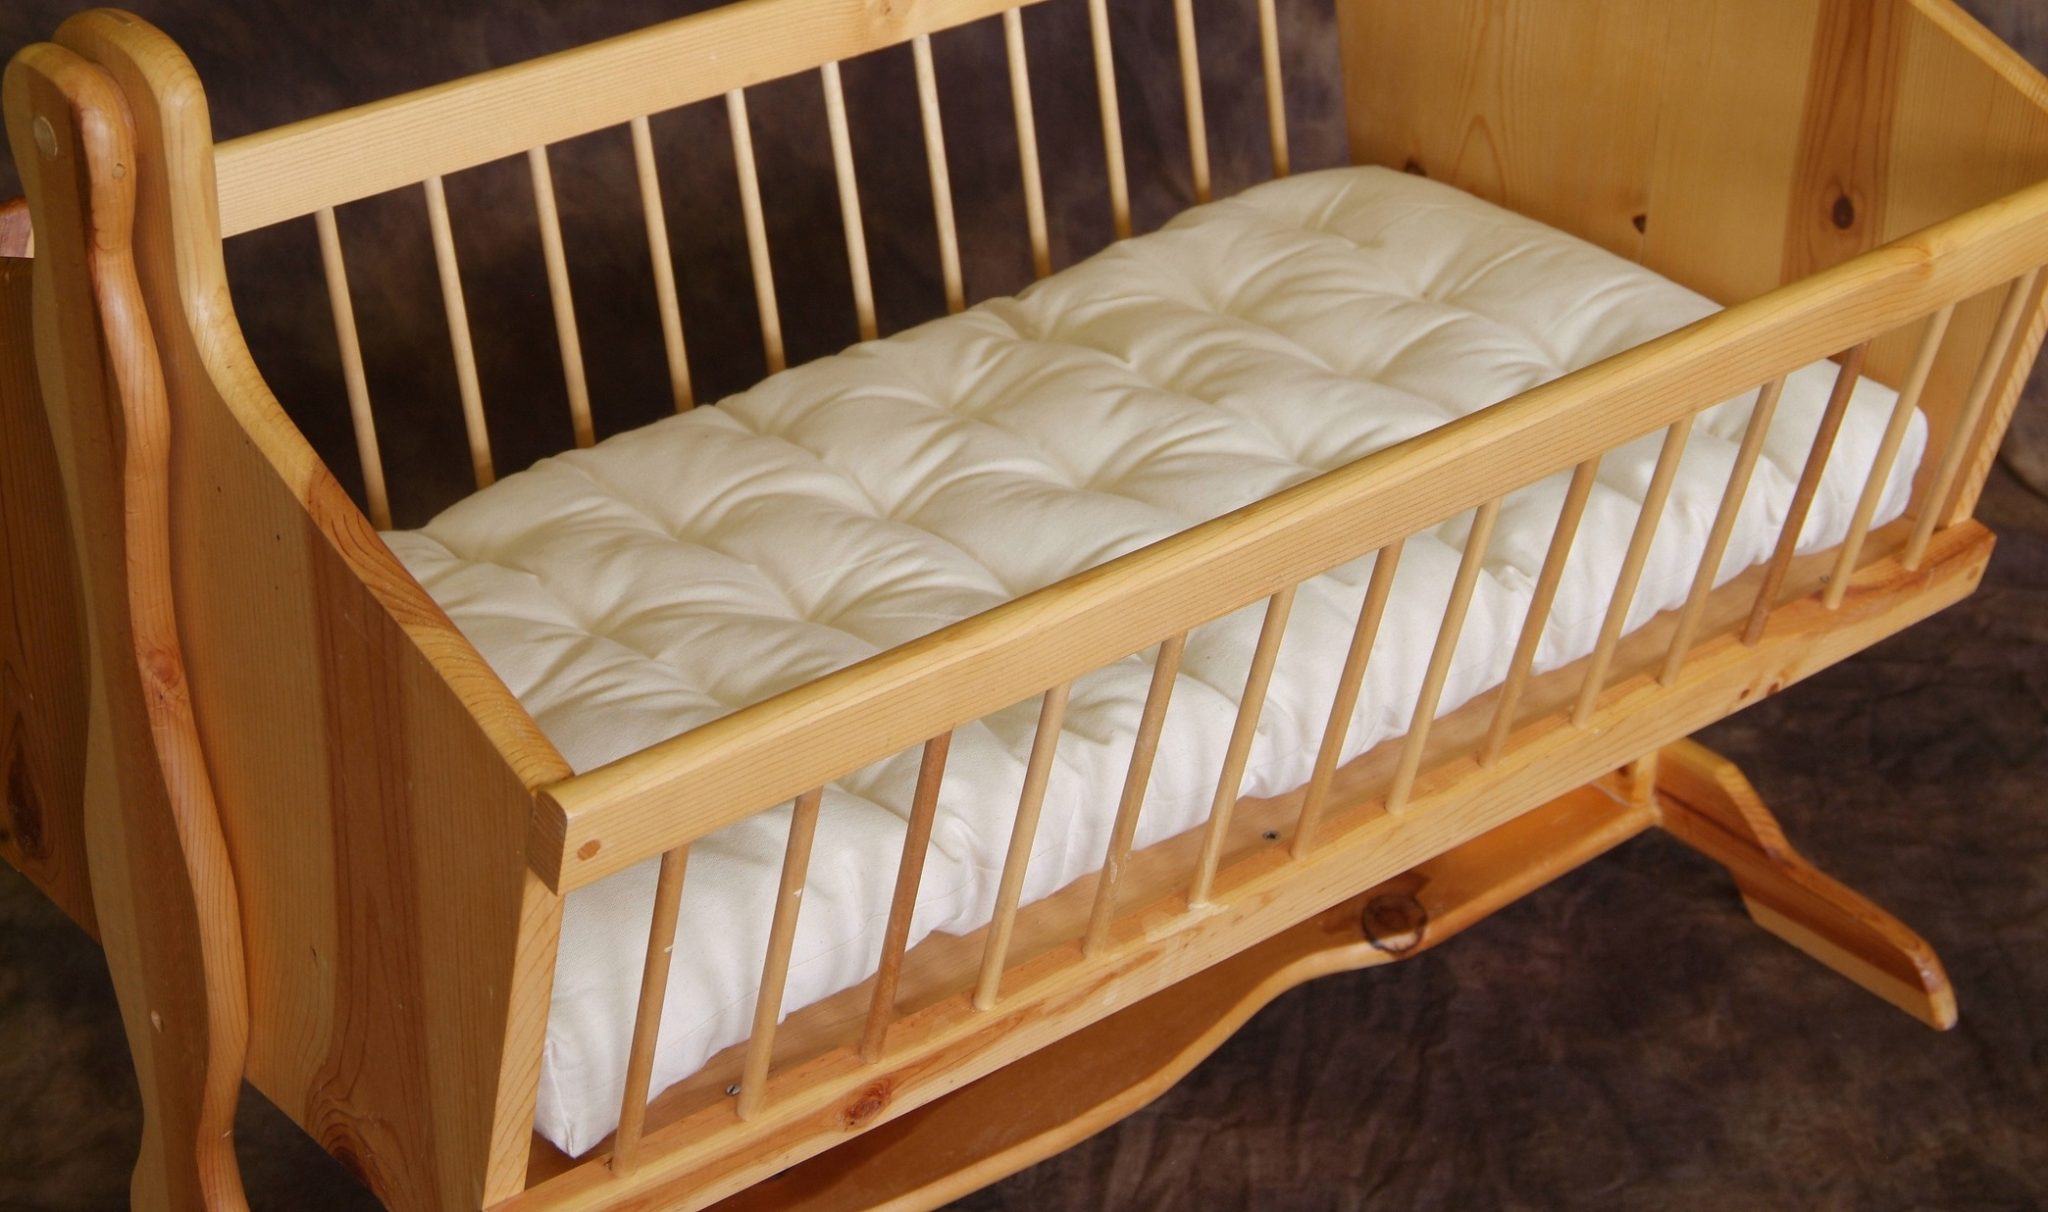 replacement bassinet mattress canada